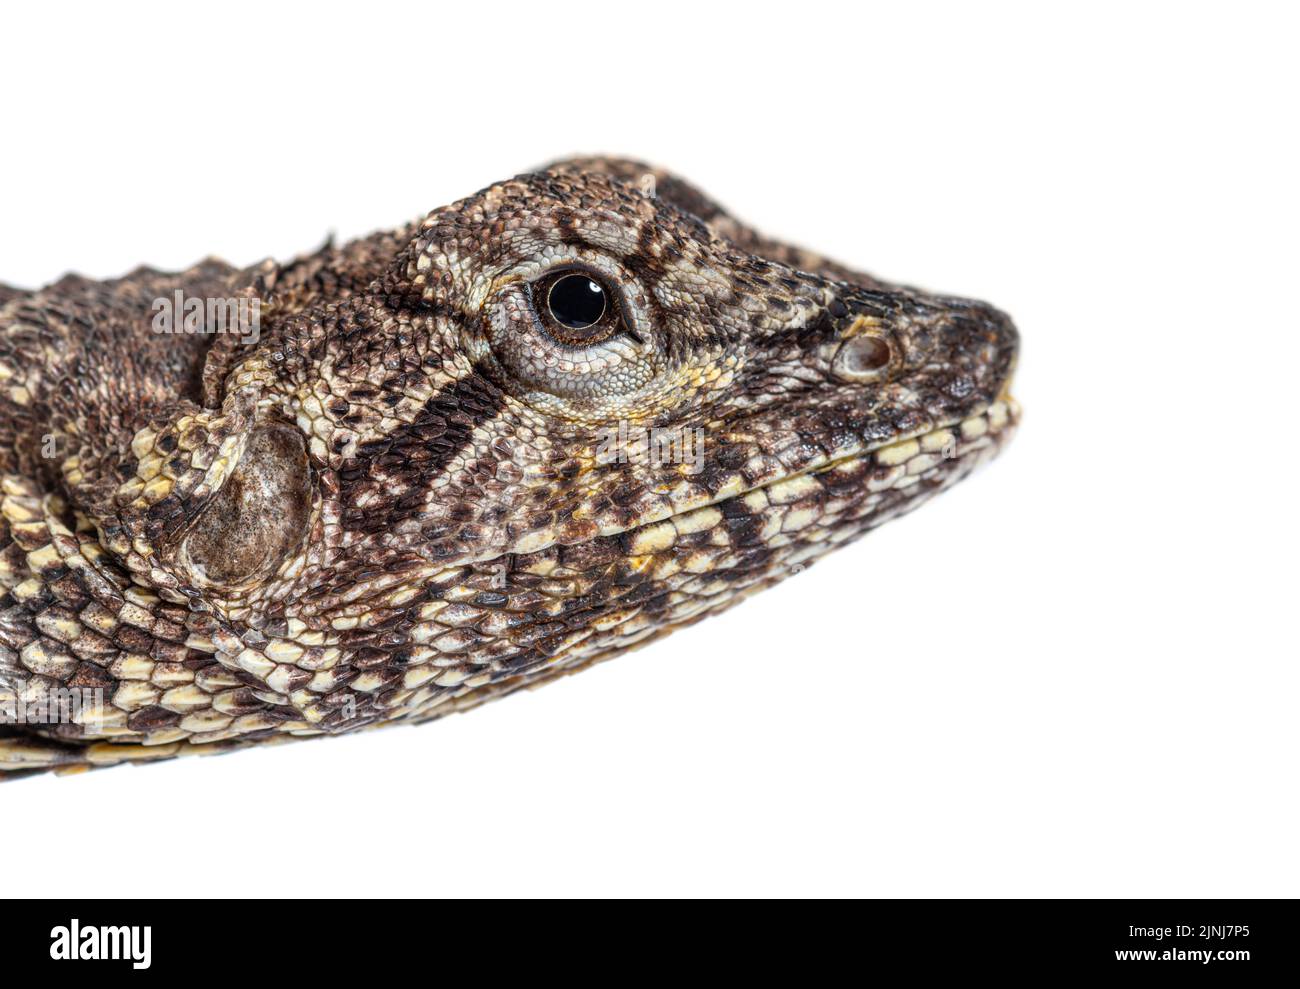 head shot of aFrilled lizard, chlamydosaurus kingii, isolated on white Stock Photo